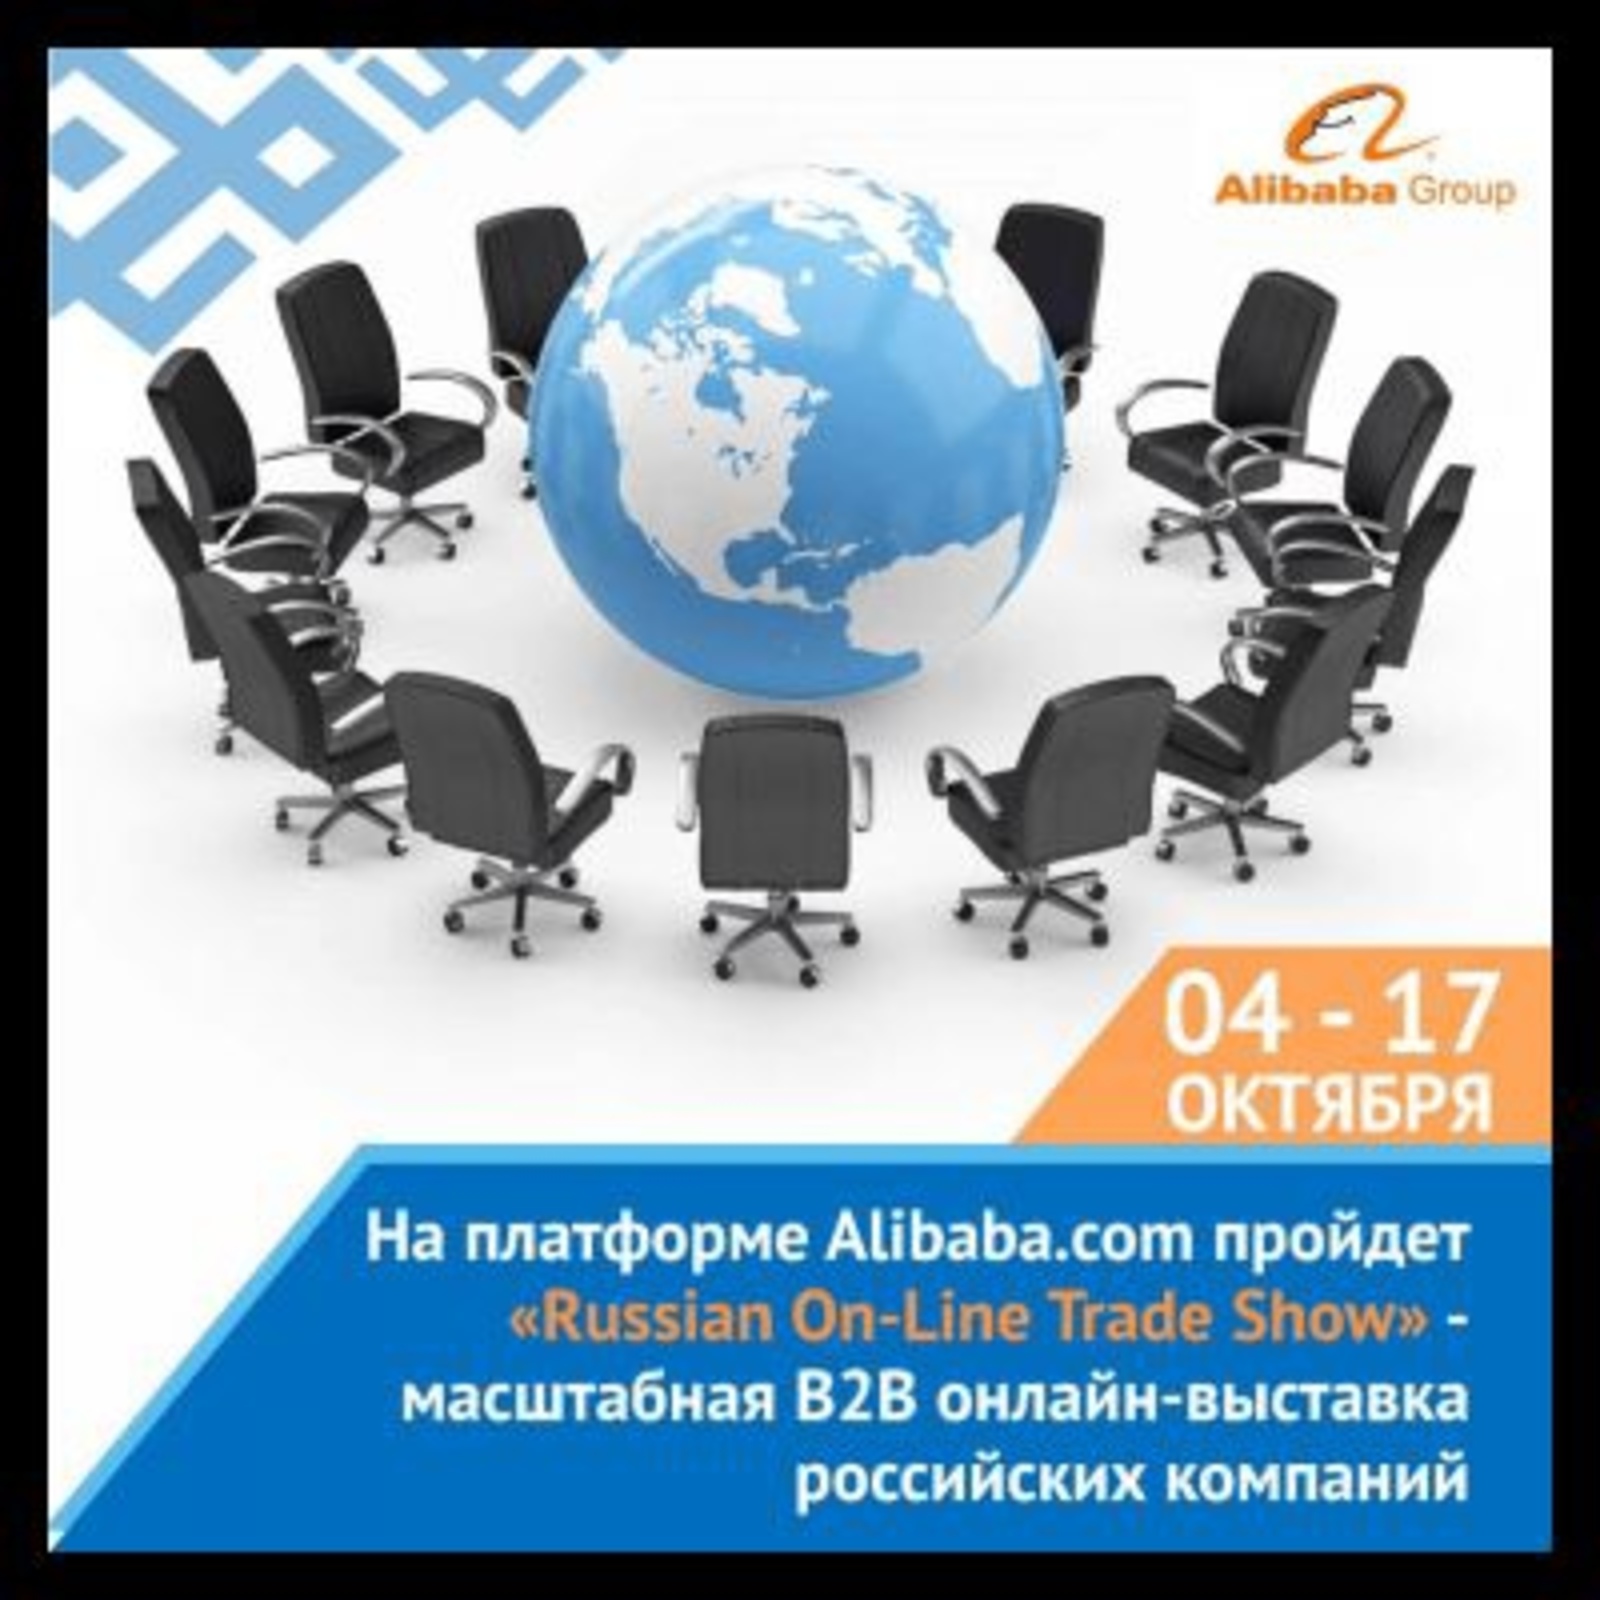 В октябре 2021 г. на глобальной электронной торговой площадке Alibaba.com пройдет выставка российских производителей товаров и услуг